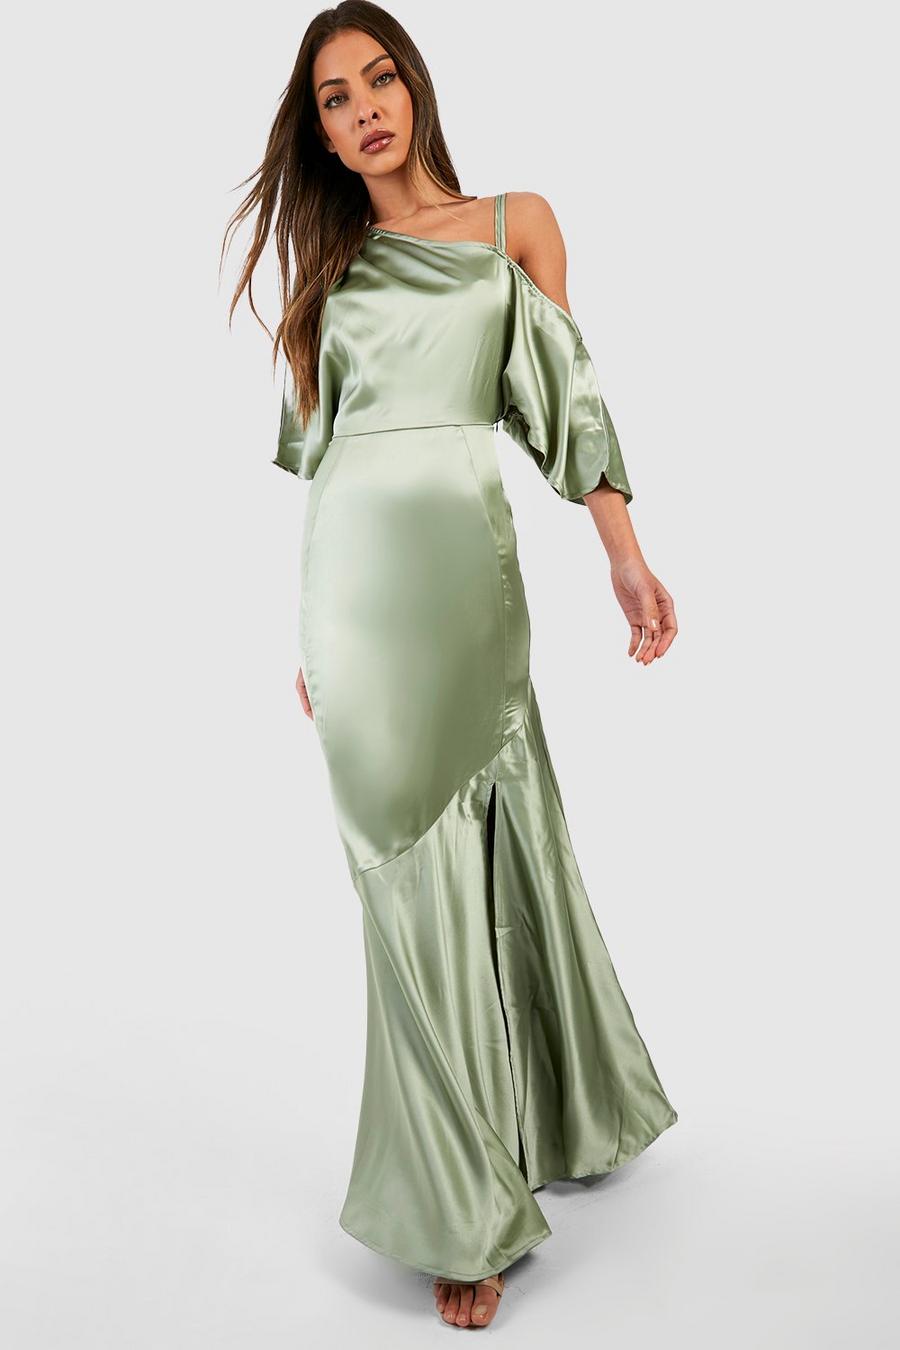 מרווה verde שמלת שושבינה מסאטן באורך מקסי עם כתפיים חשופות